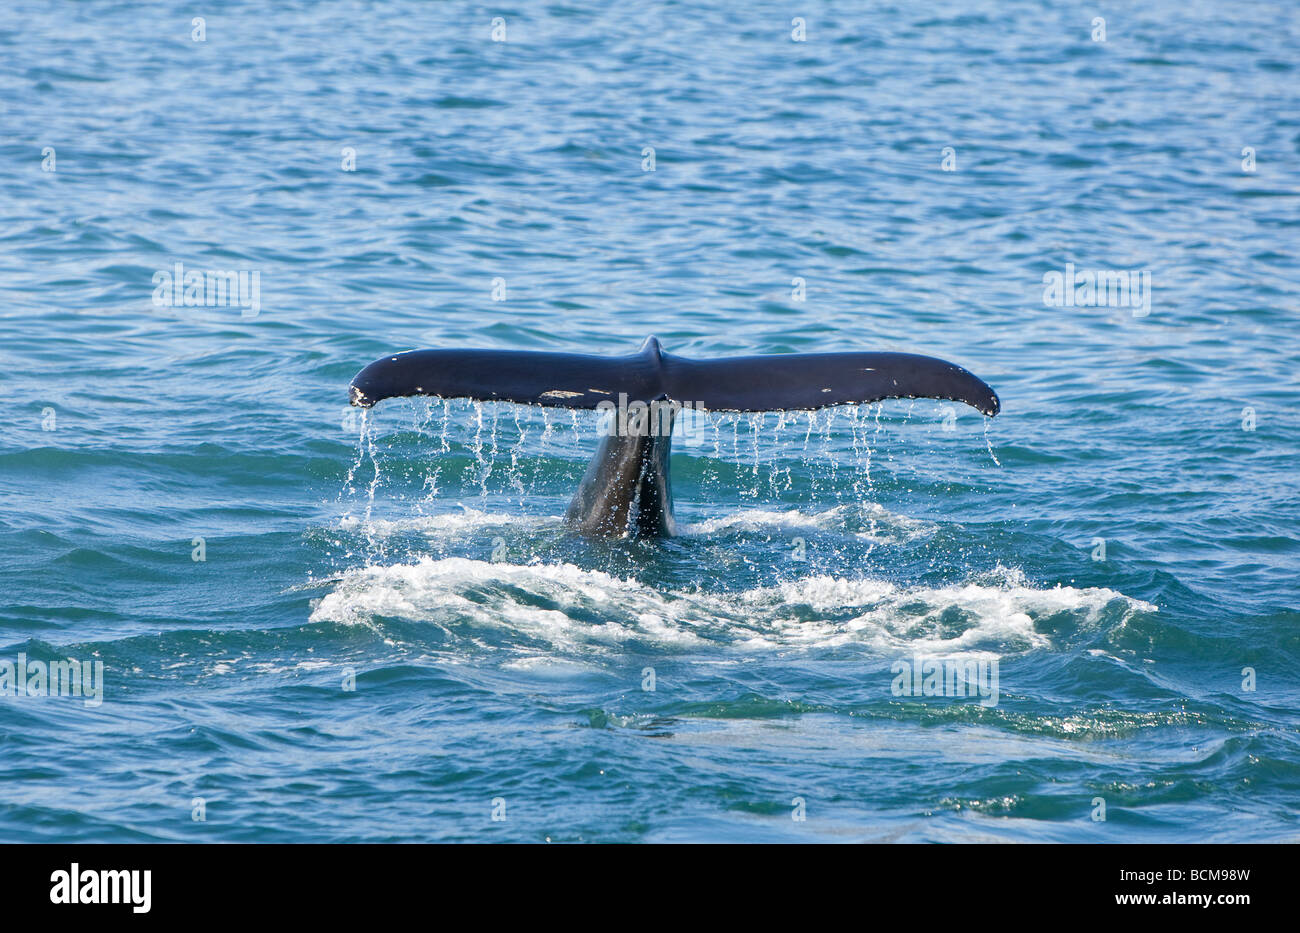 Una hembra de ballena jorobada Megaptera novaeangliae inmersiones para alimentos y muestra su cola o fluke que va hacia abajo. Foto de stock